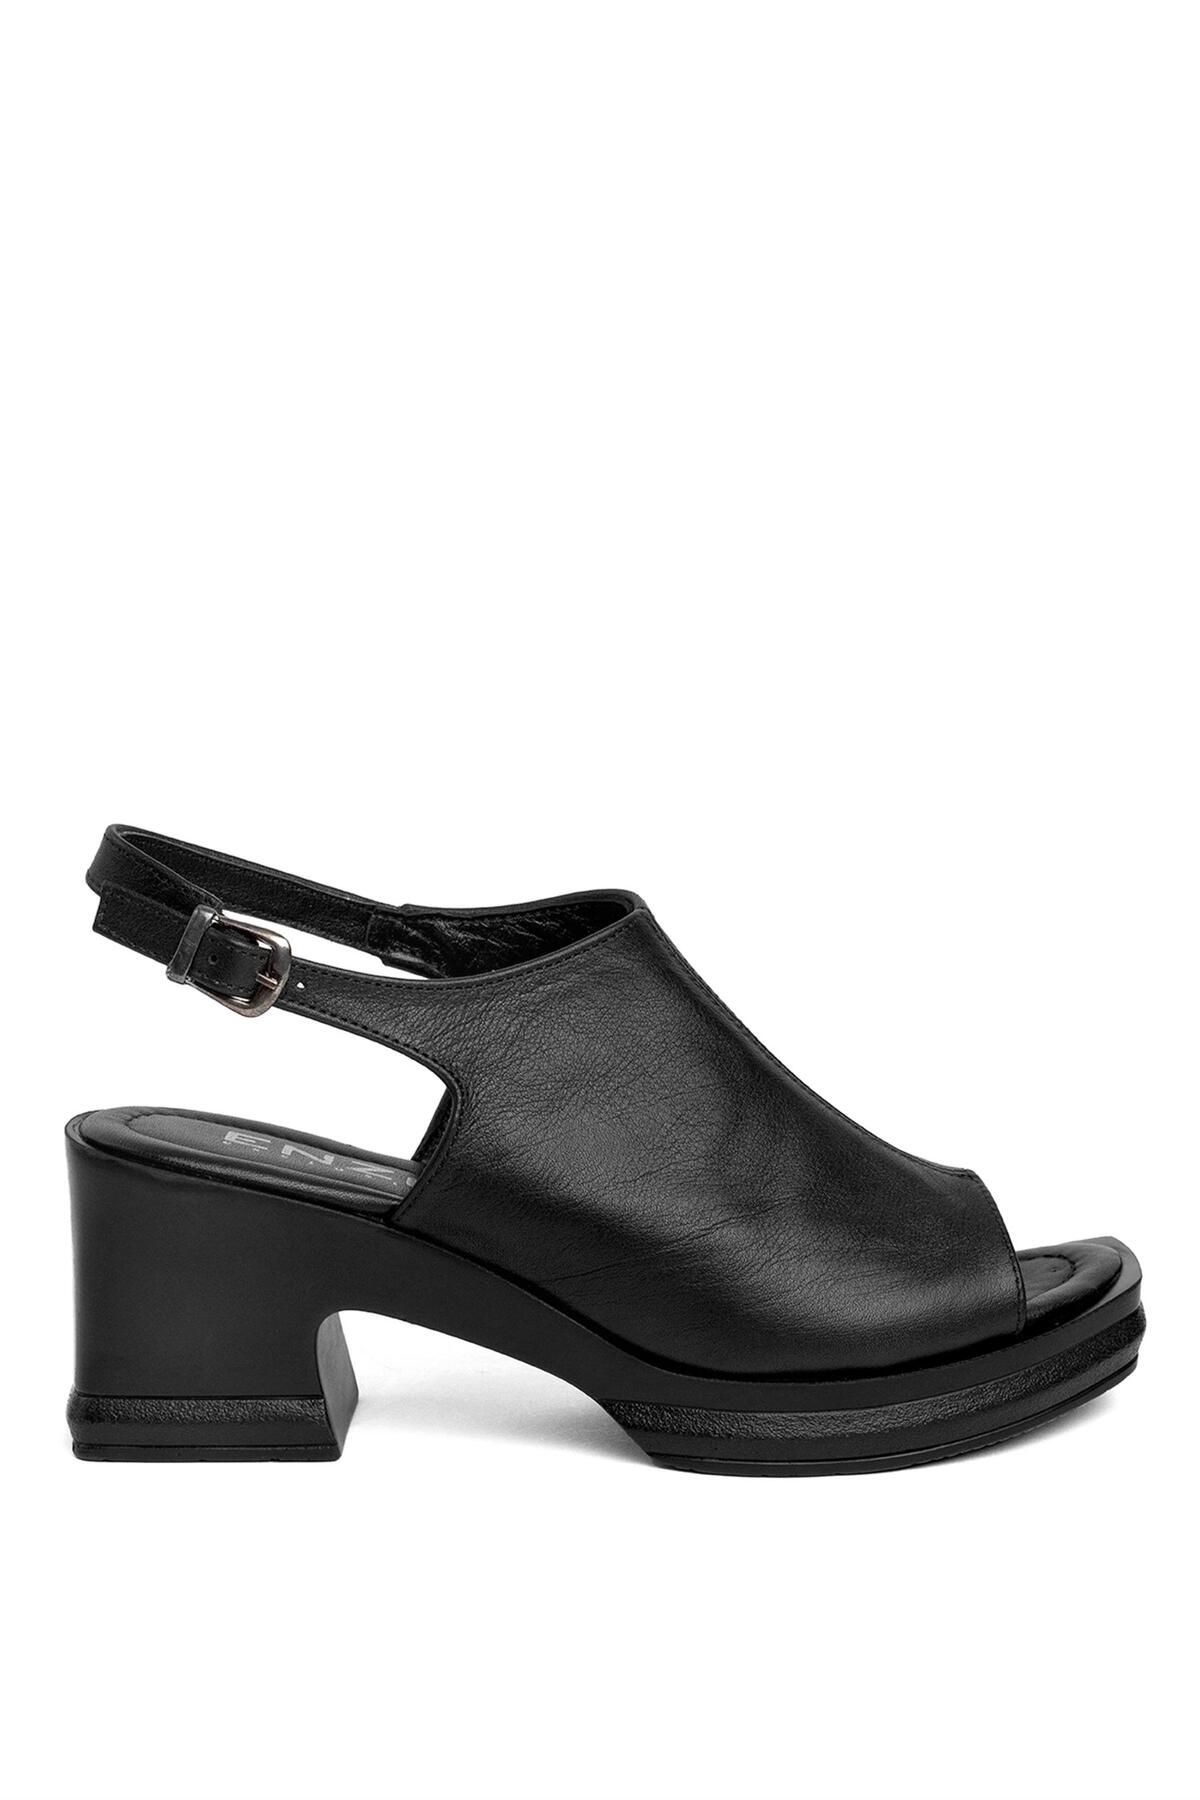 ENZO 50-05 Kadın Hakiki Deri Topuklu Sandalet Siyah